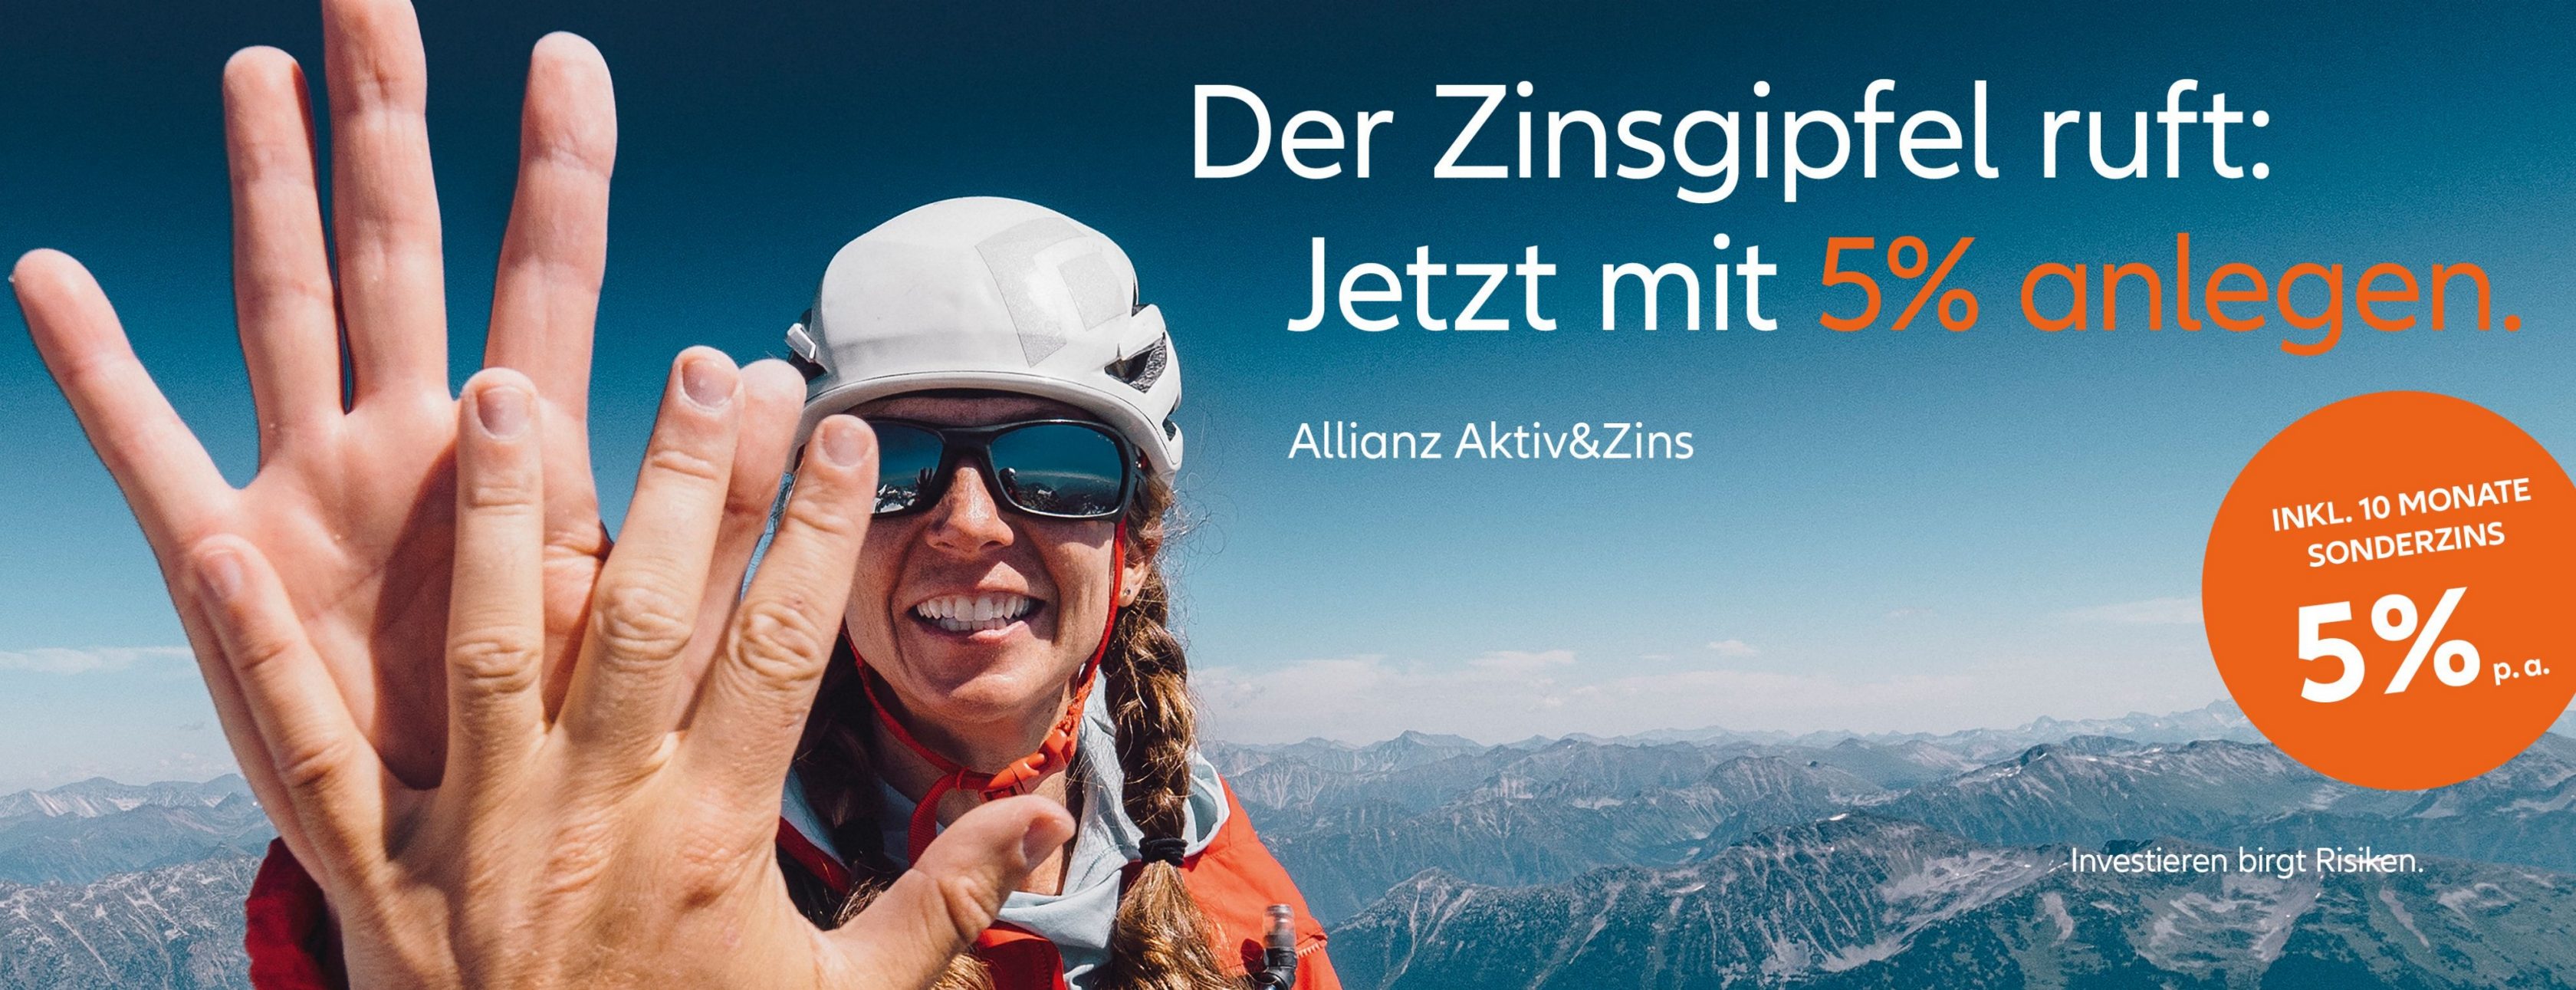 Allianz Versicherung Potratz EGbR Kolkwitz - Zinsgipfel, Werbung Allianz Aktiv&Zins